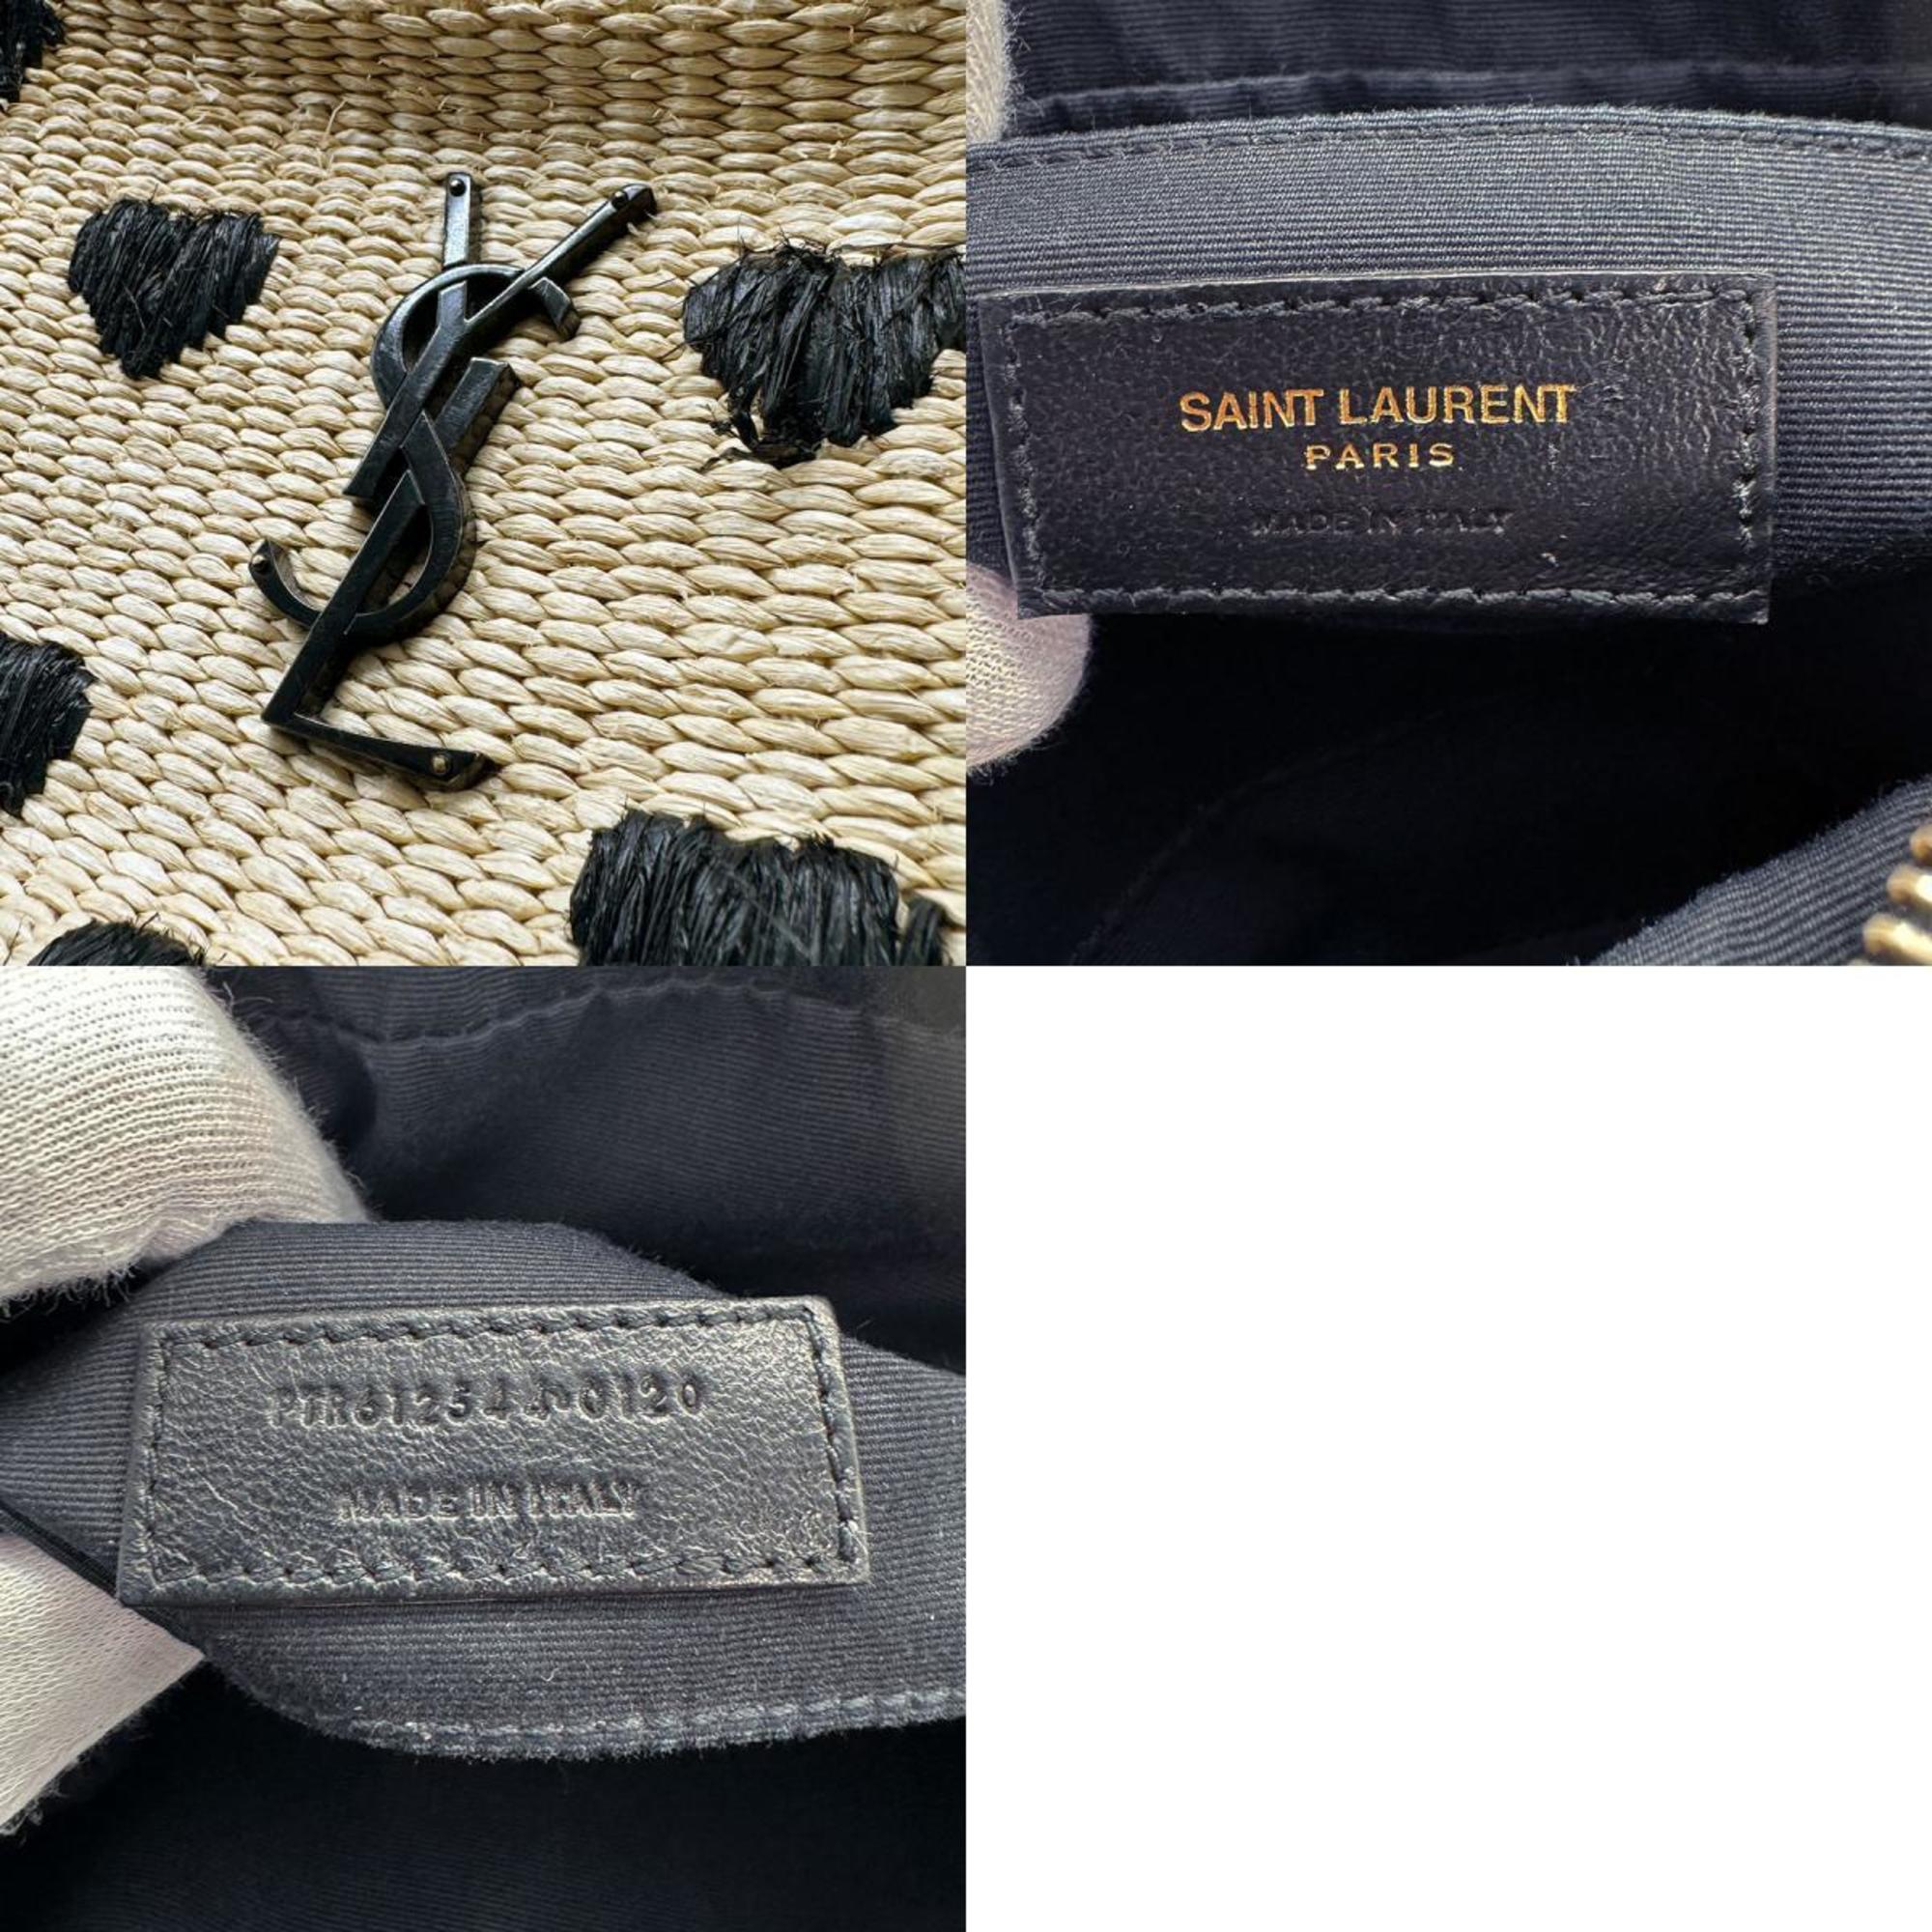 Saint Laurent SAINT LAURENT Shoulder Bag Raffia/Leather Beige x Black Women's 612544 z0435